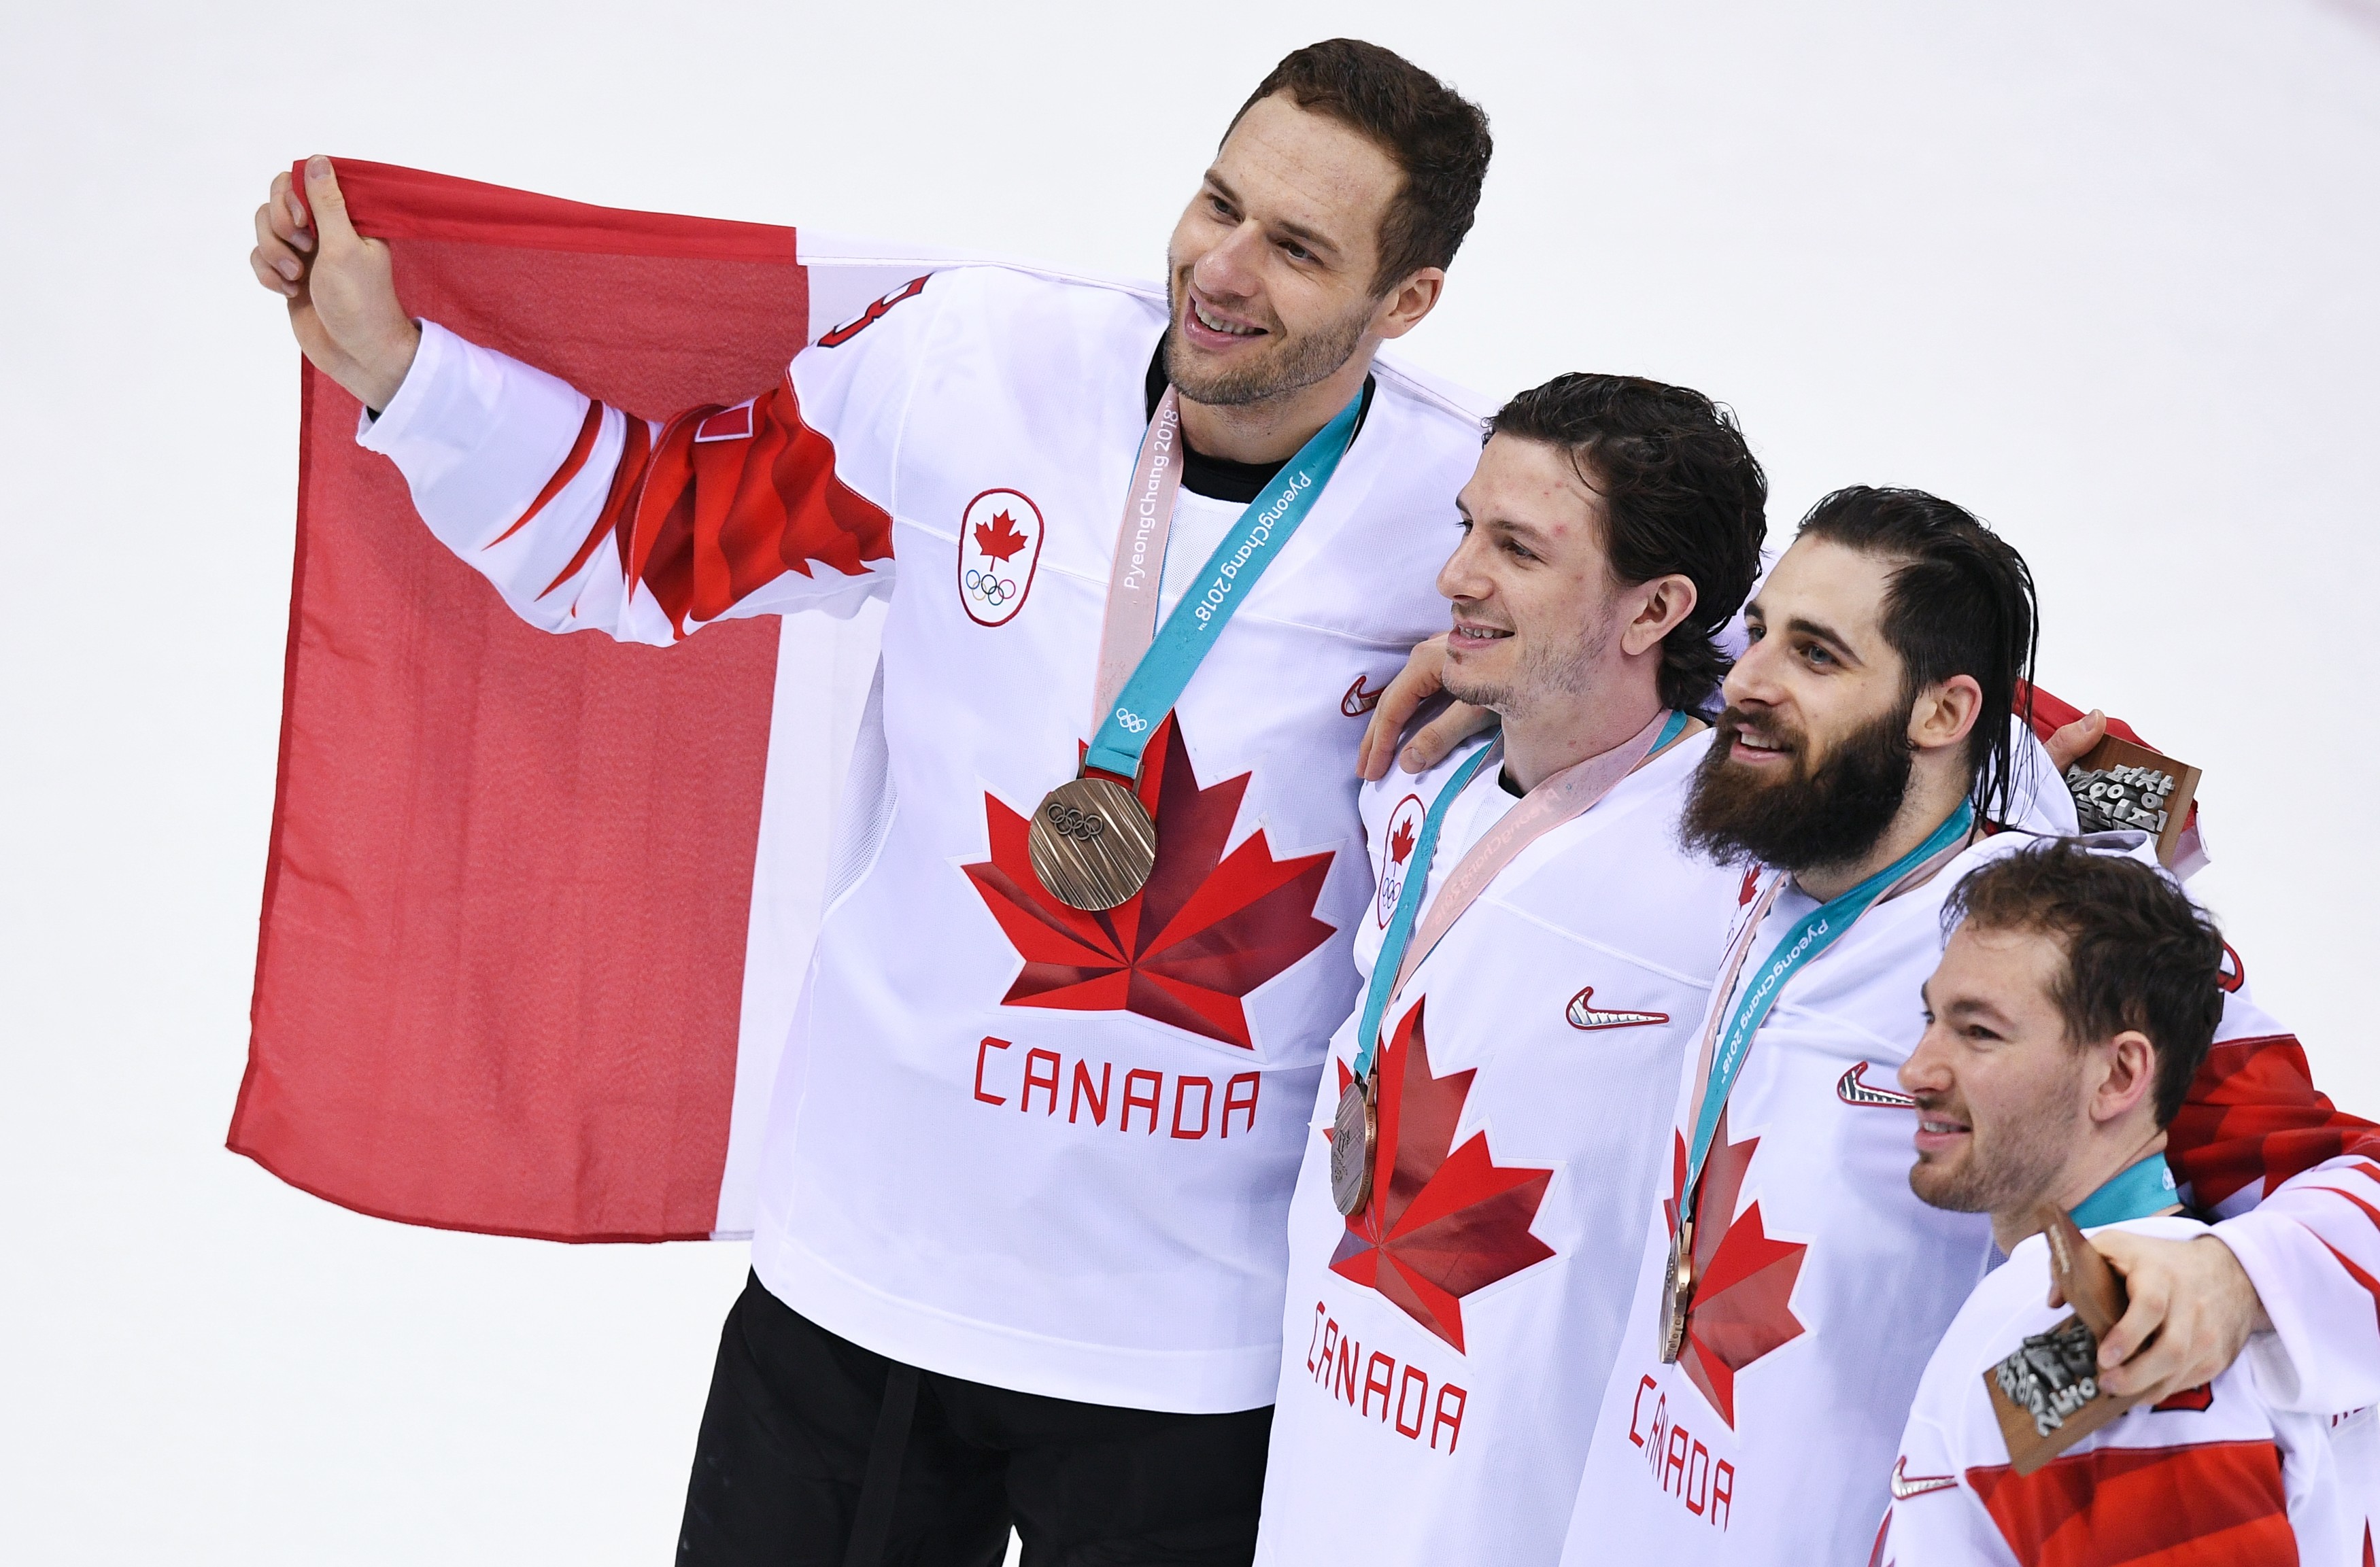 Сборная Канады по хоккею стала бронзовым призёром Олимпийских игр, обыграв Чехию со счётом 6:4. Фото: РИА Новости/Александр Вильф